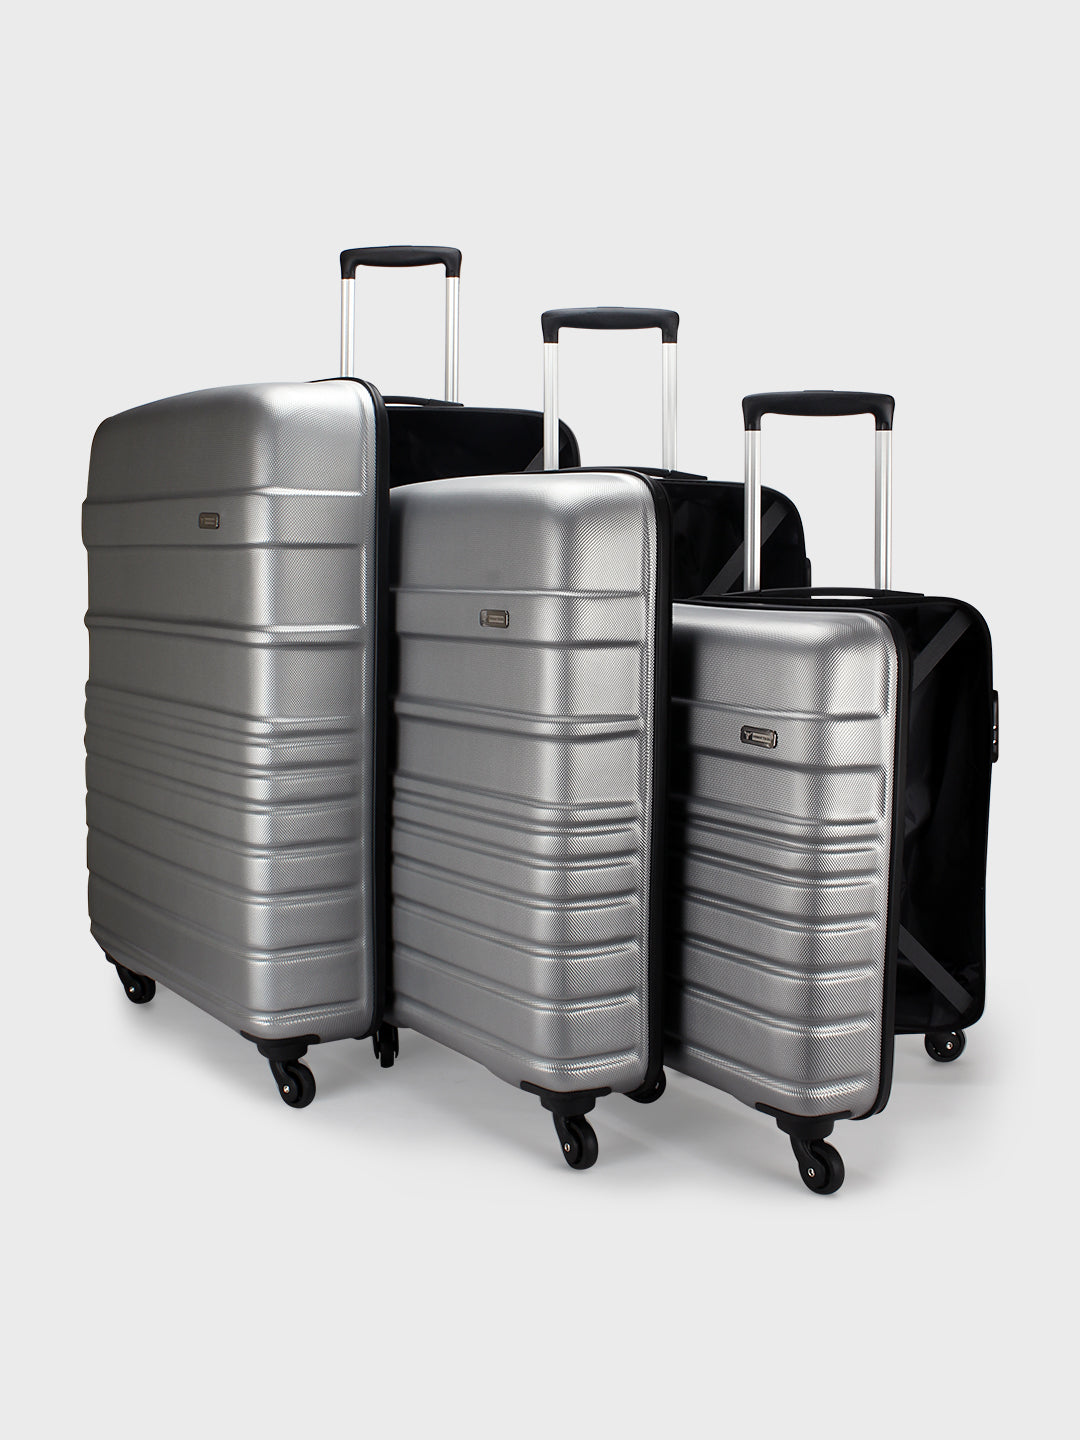 Izod Celina Designer 3pc Luggage Set in Black